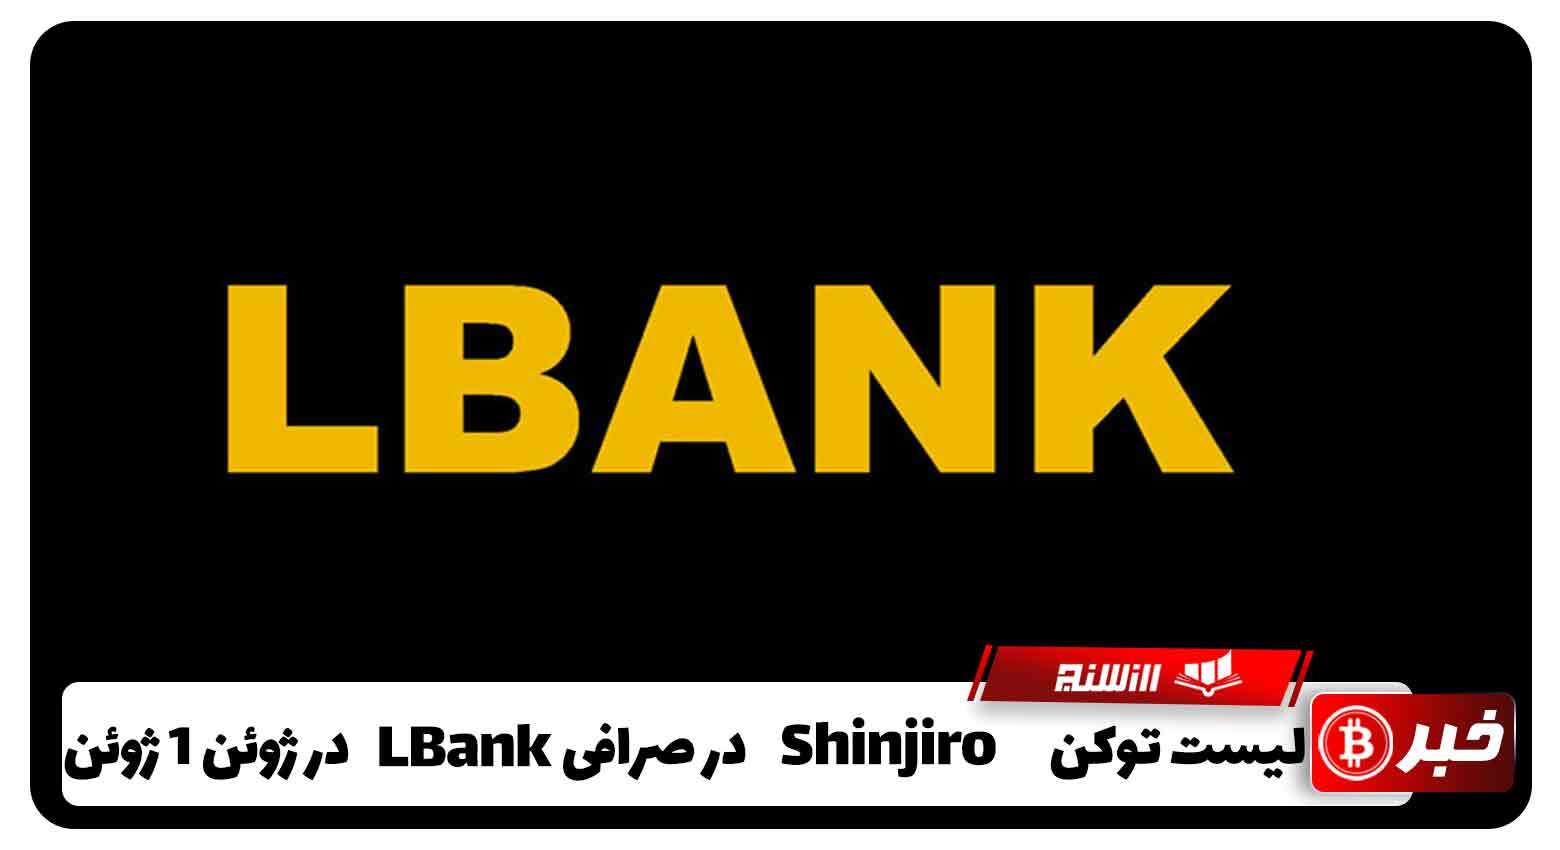 لیست توکن SHINJIRO در صرافی LBank در 1 ژوئن